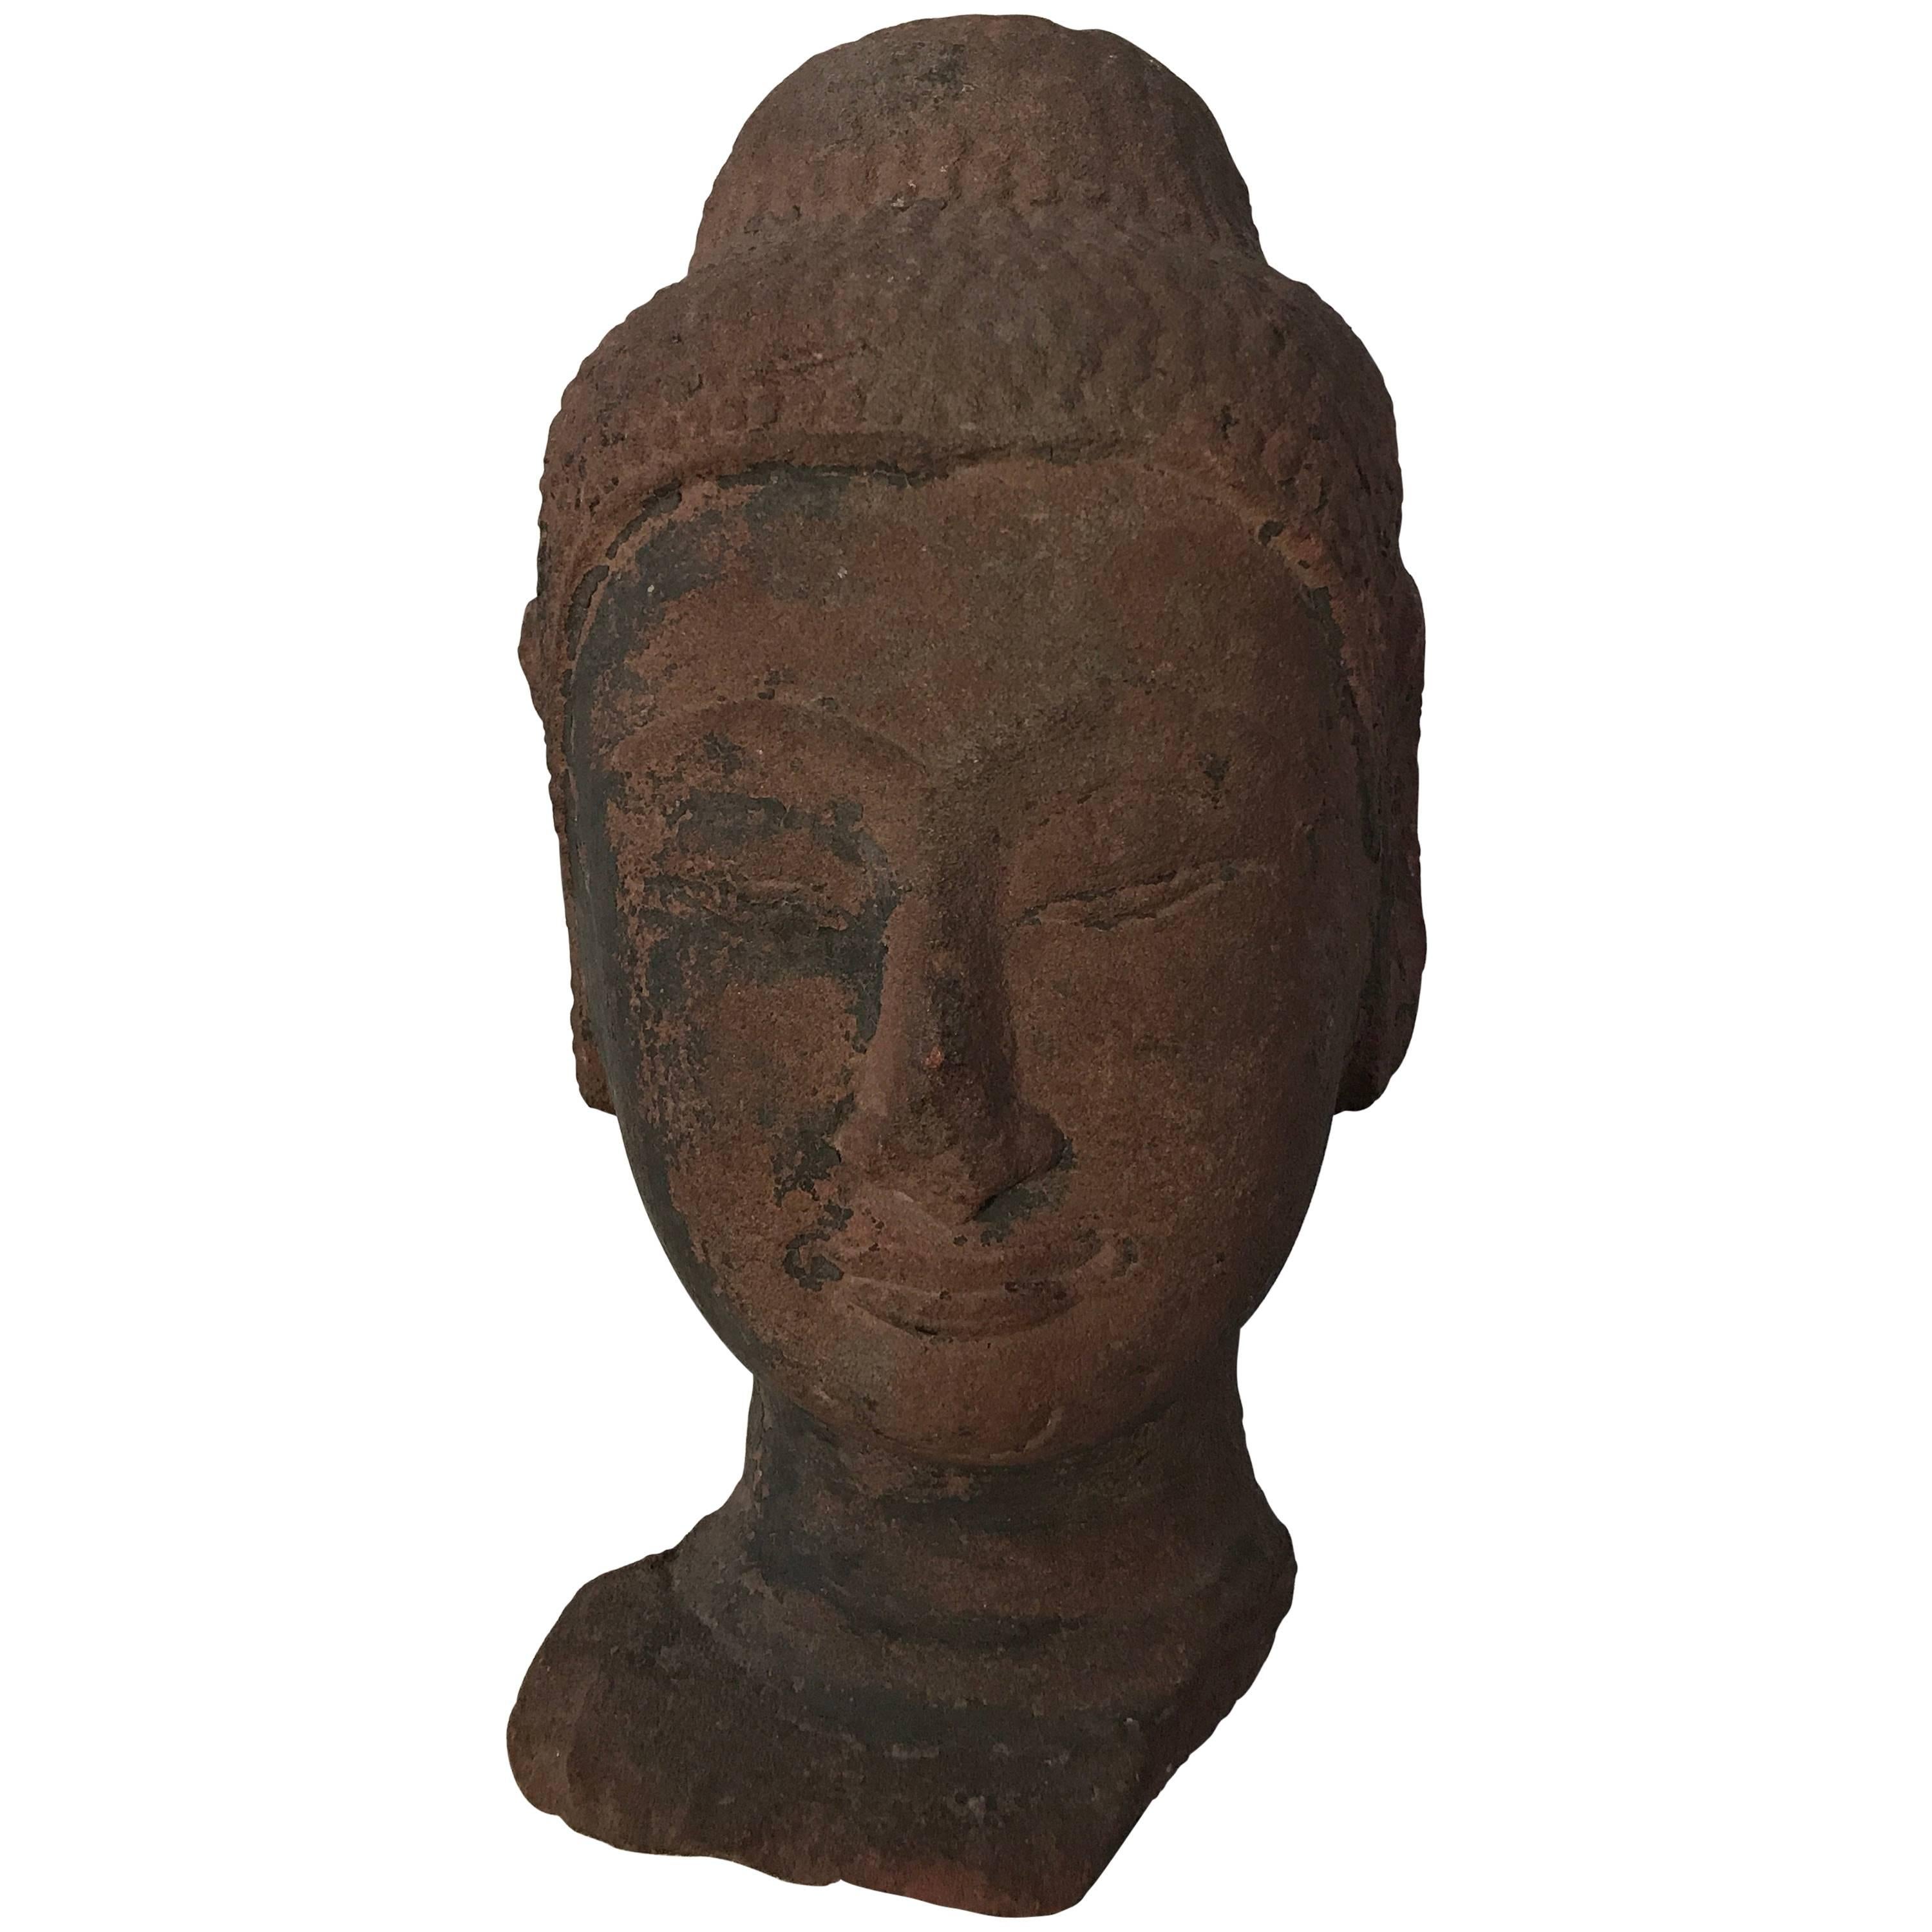 Ancienne sculpture en grès thaïlandais de la tête d'un Bouddha, 16ème siècle,
Période d'Ayuthaya,
le visage est finement sculpté à la main,
traces à gauche des revêtements polychromes,
belle patine du grès rouge,
Pièce très élégante et décorative